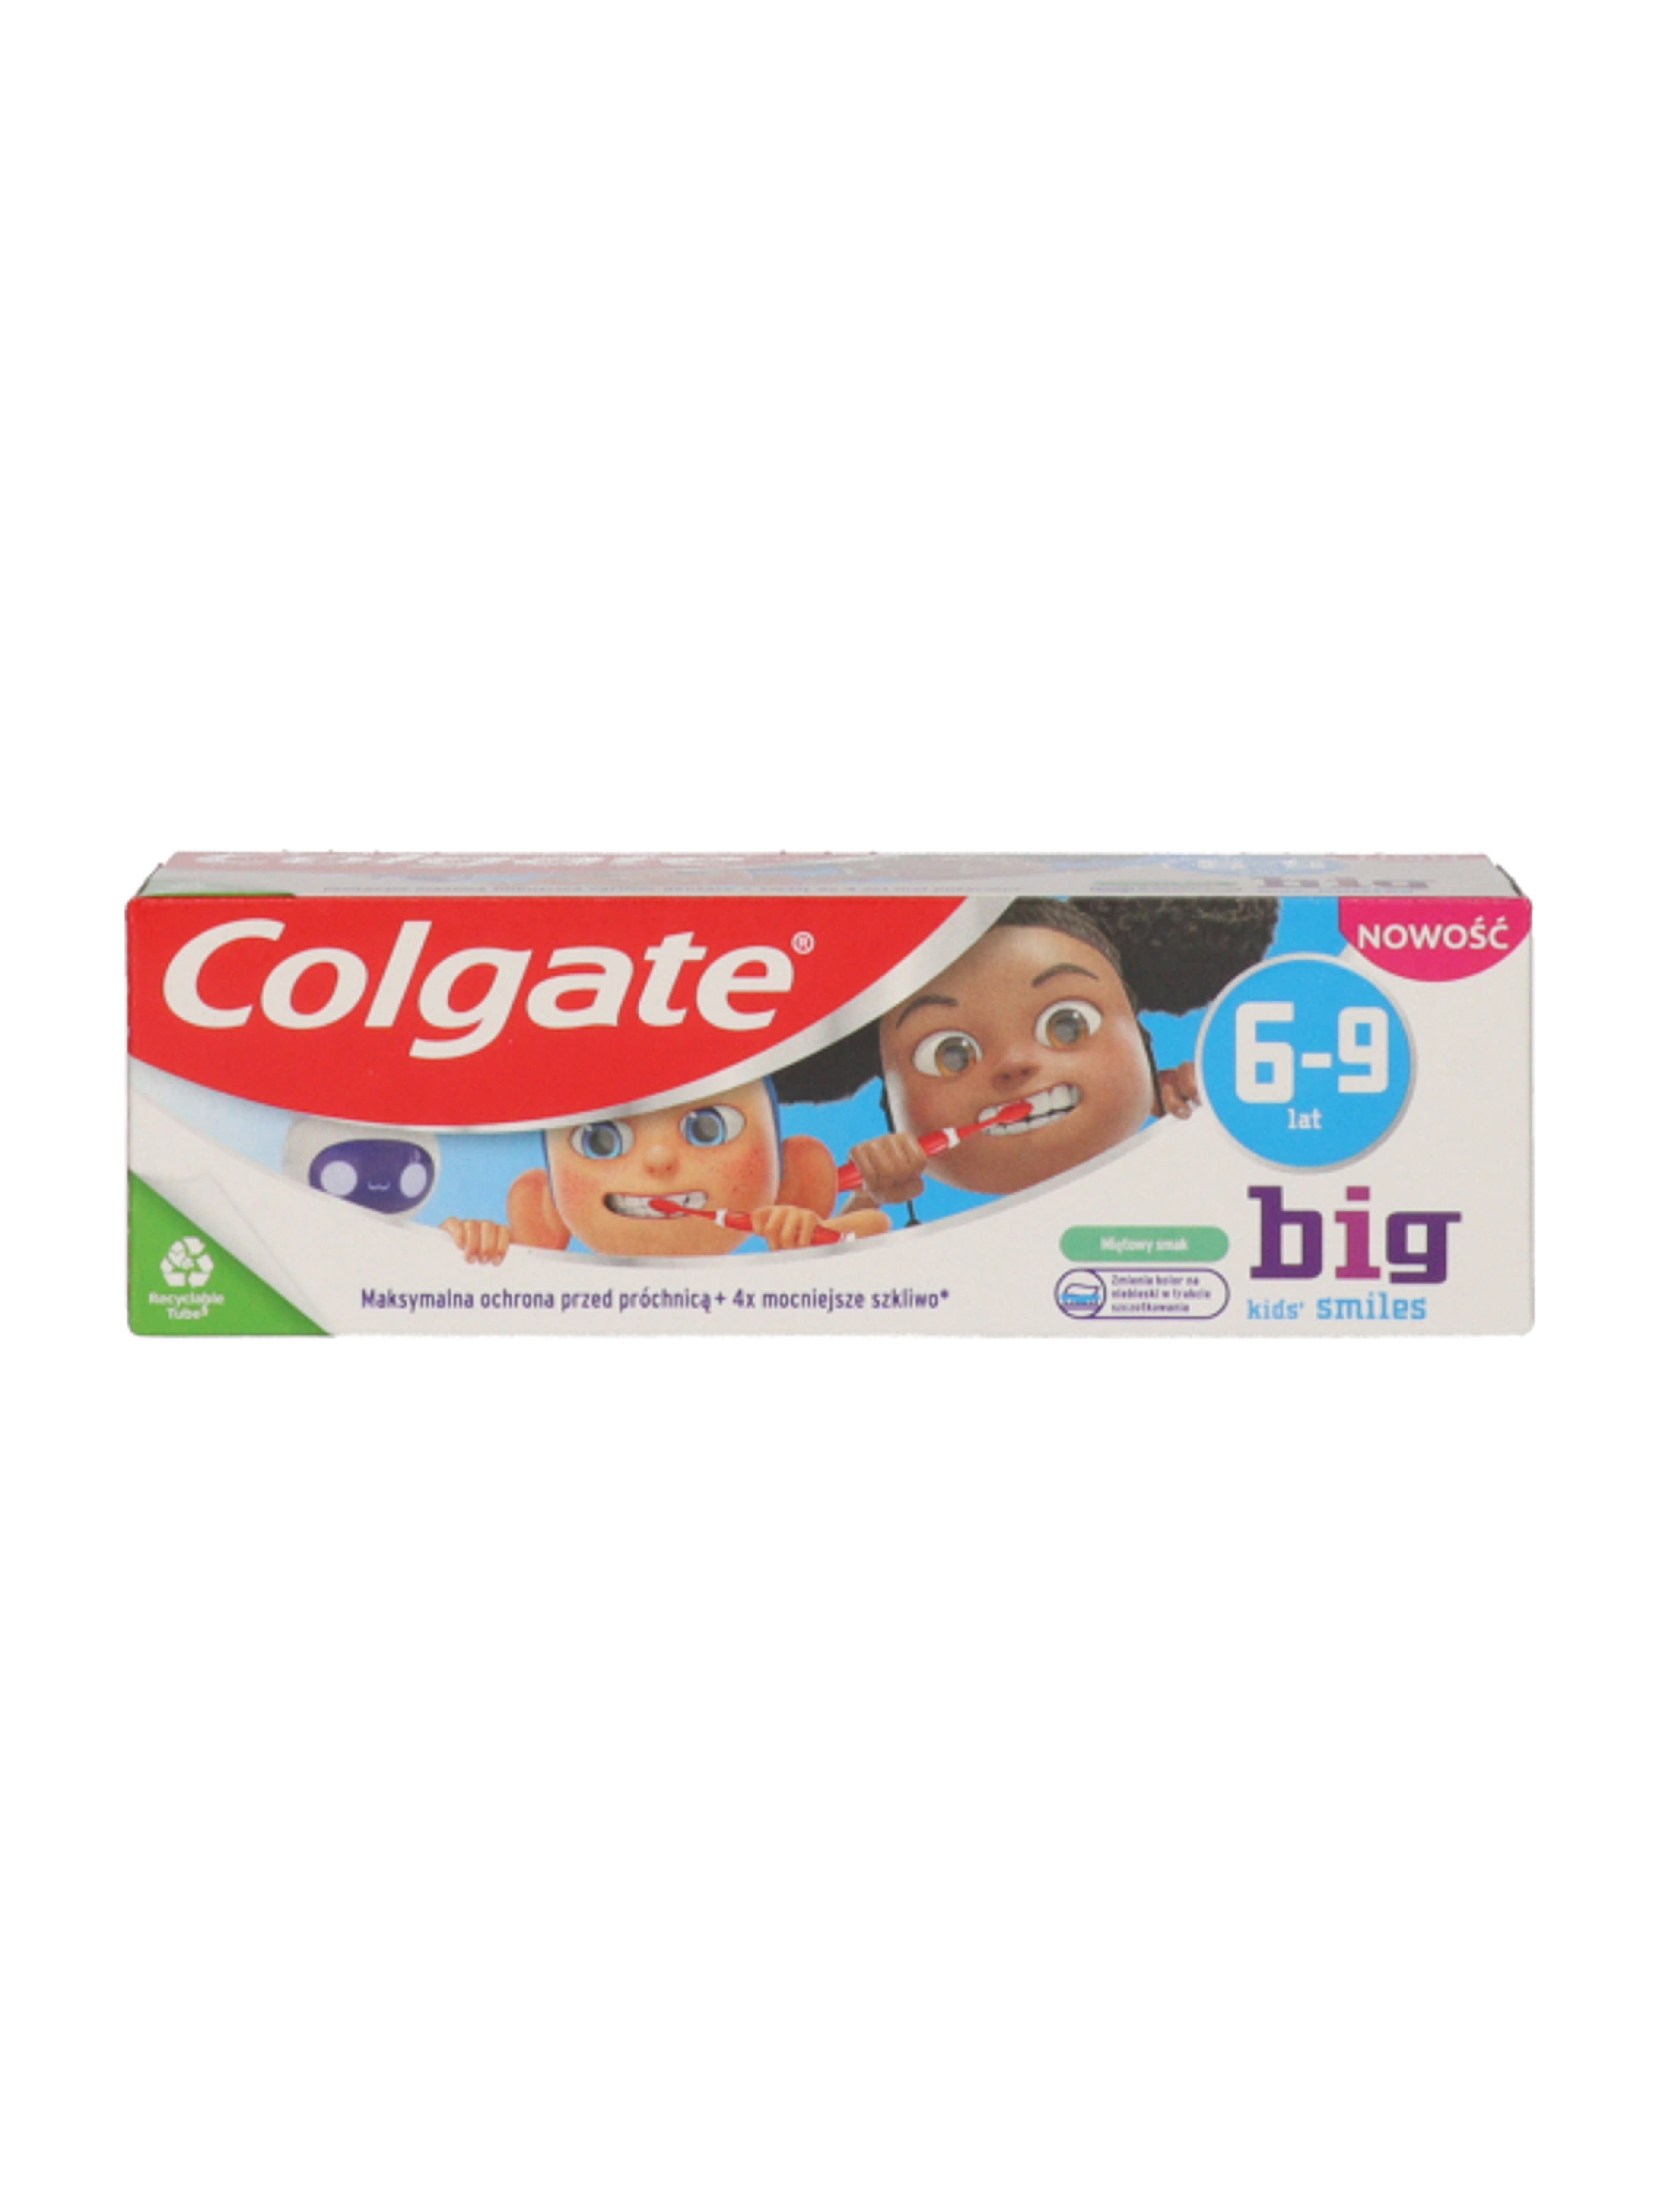 Colgate Kids Smiles fogkrém 6-9 éves gyerekek részére - 50 ml-10